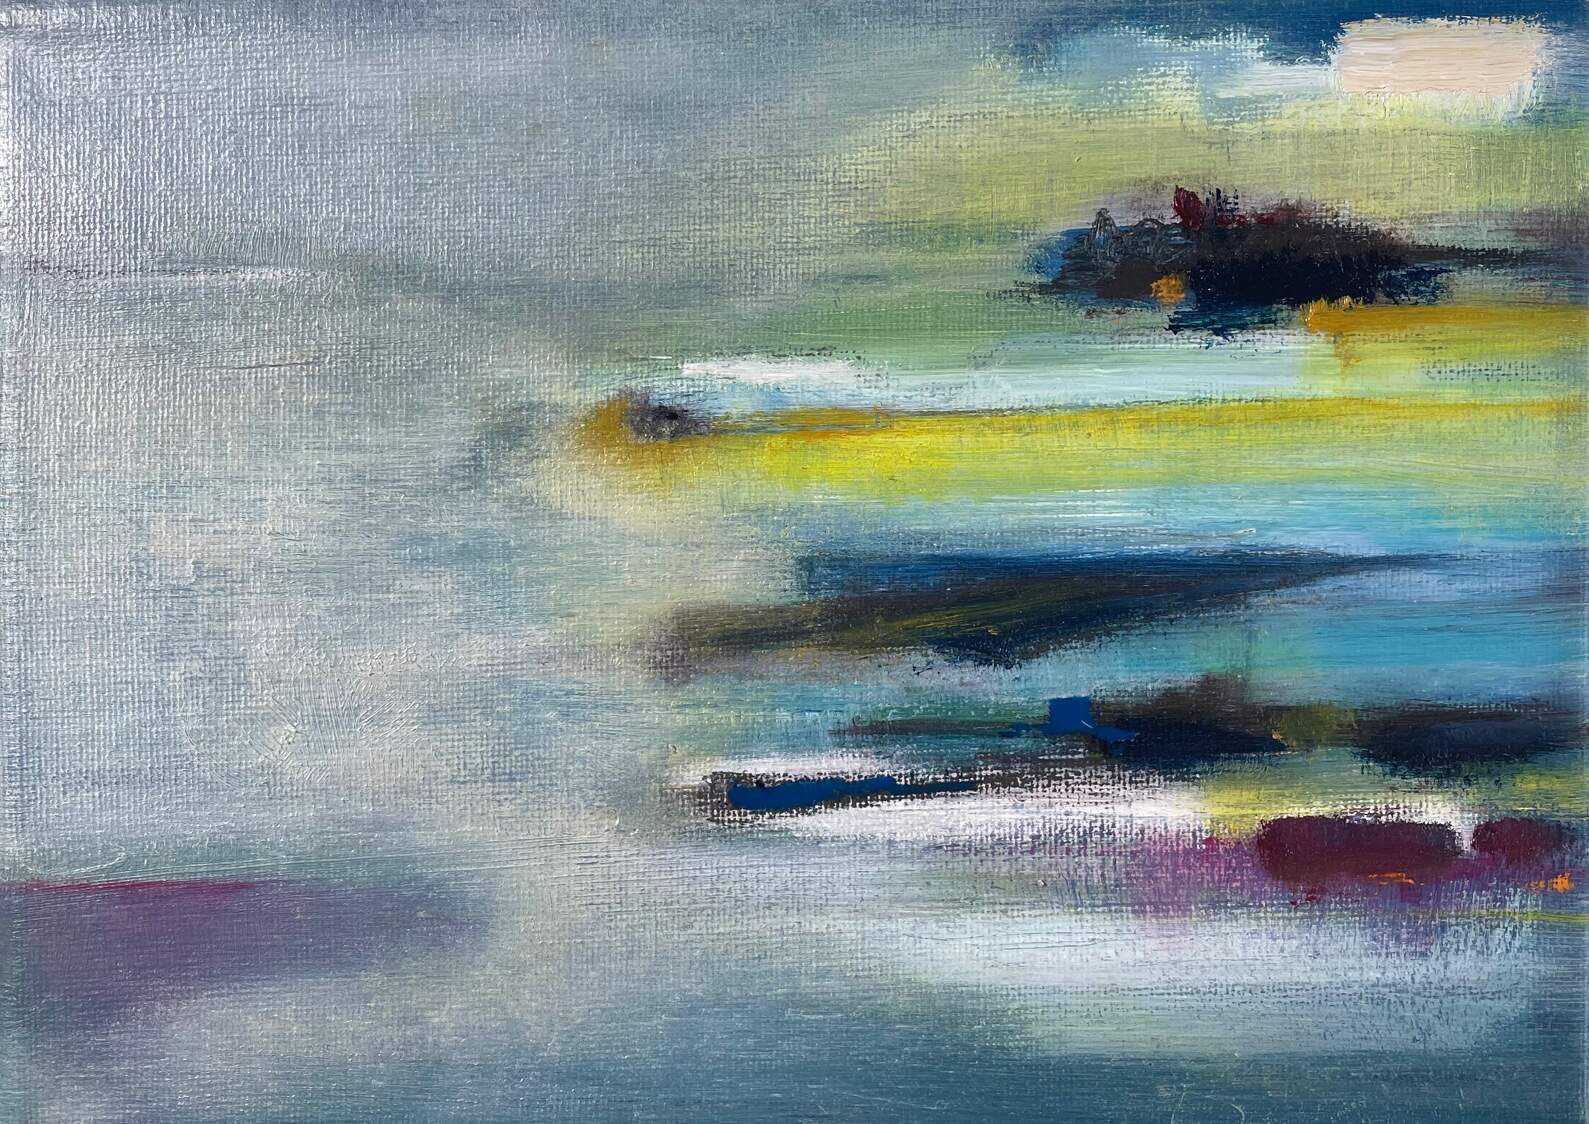 13 x 18 cm - oil paint & oil pastel on canvas